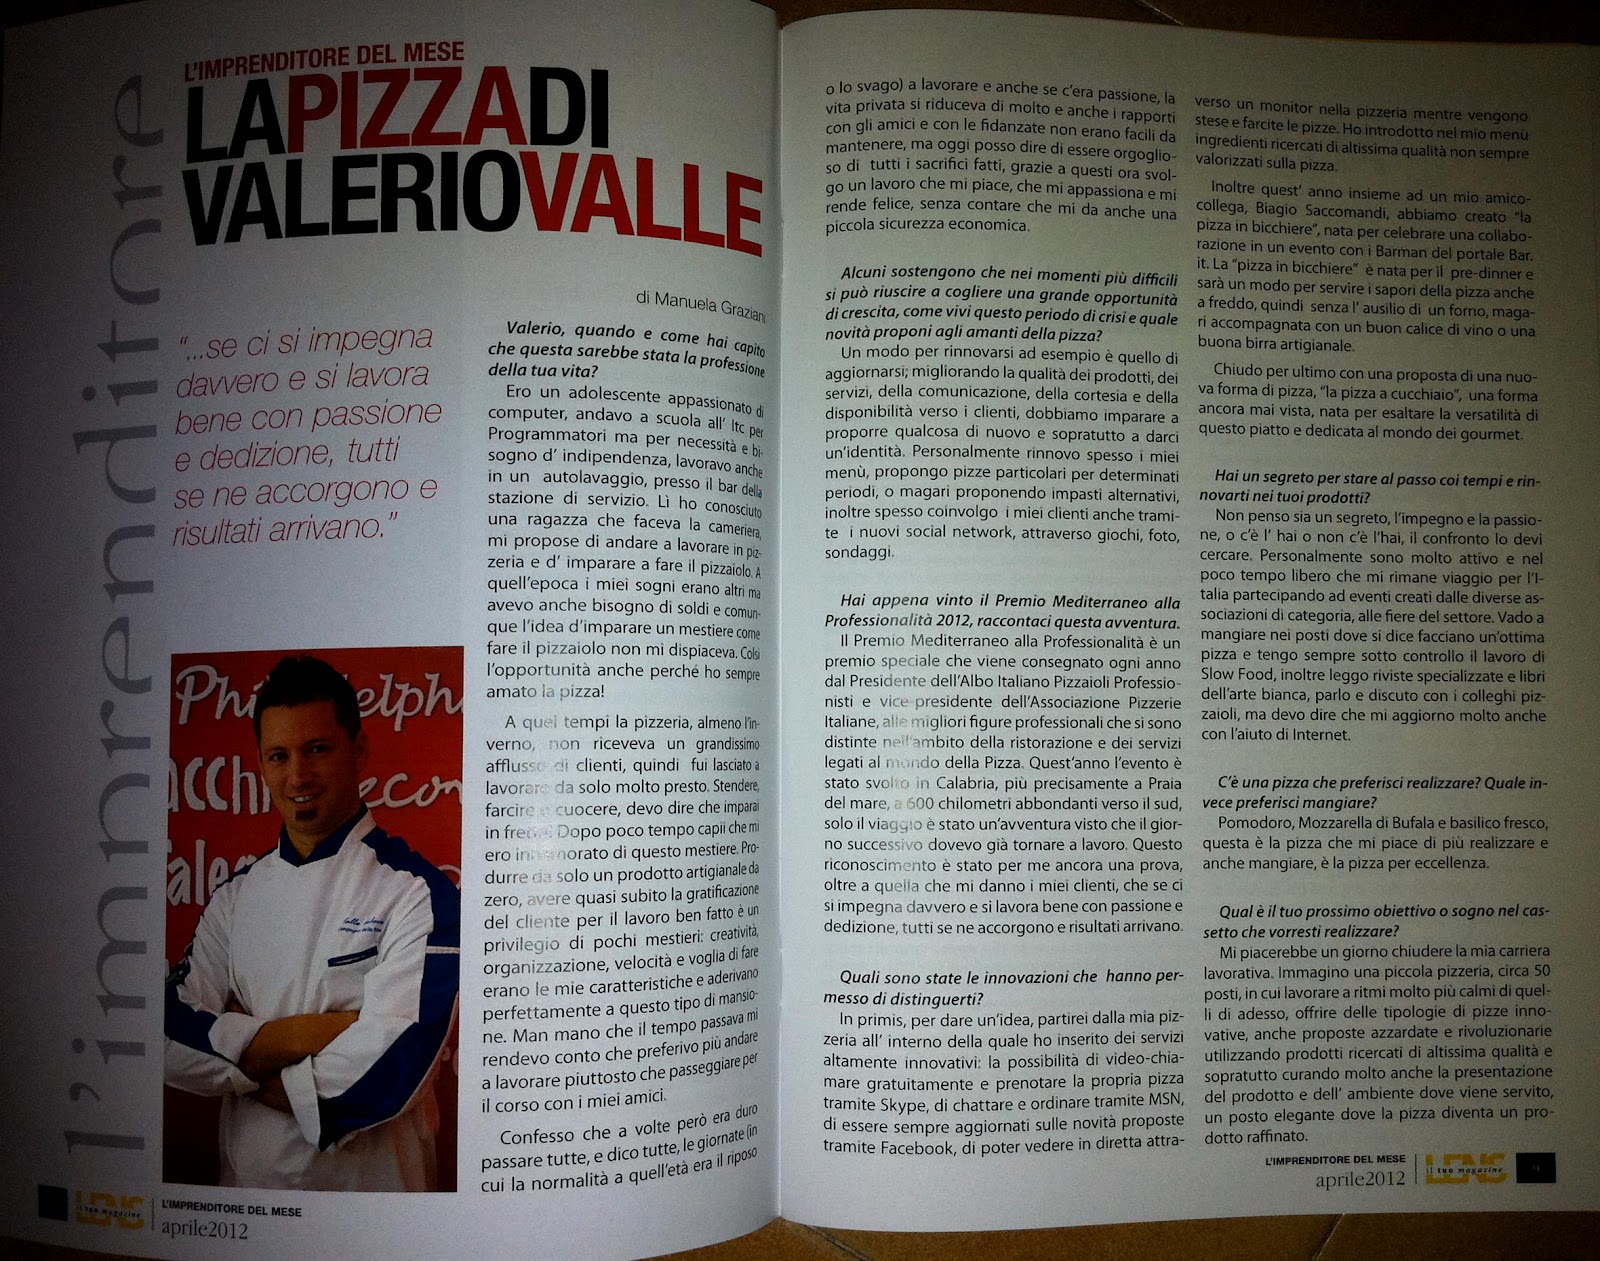 La Pizza di Valerio Valle: imprenditore del mese